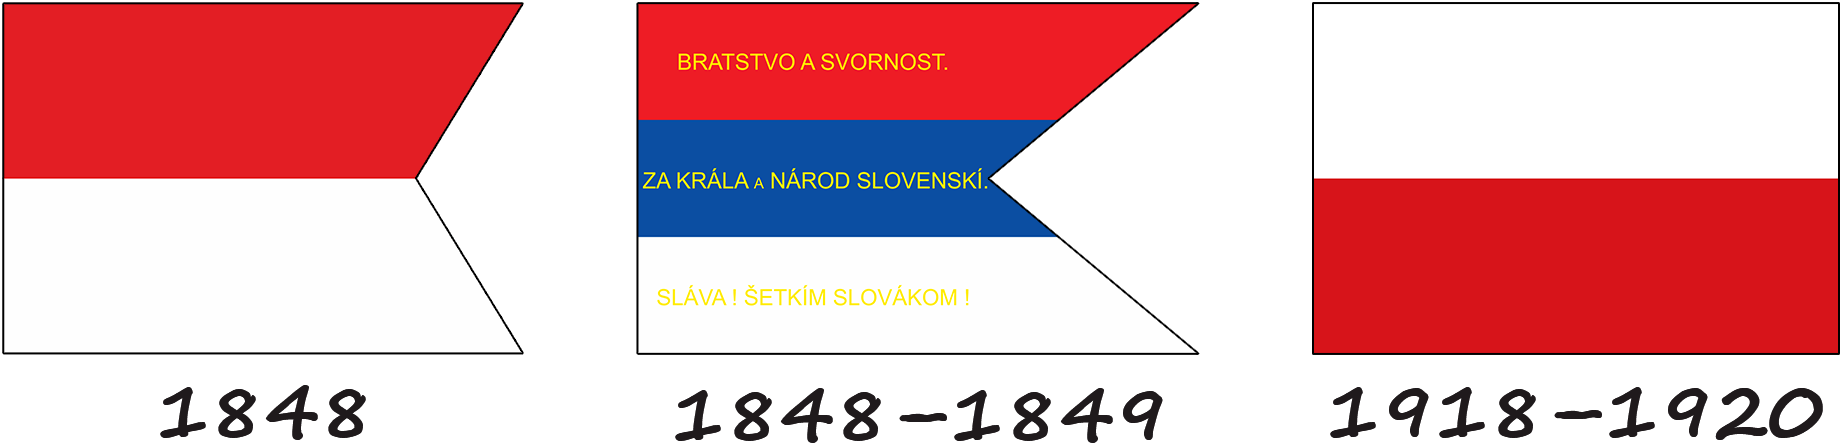 Історія прапору Словаччини